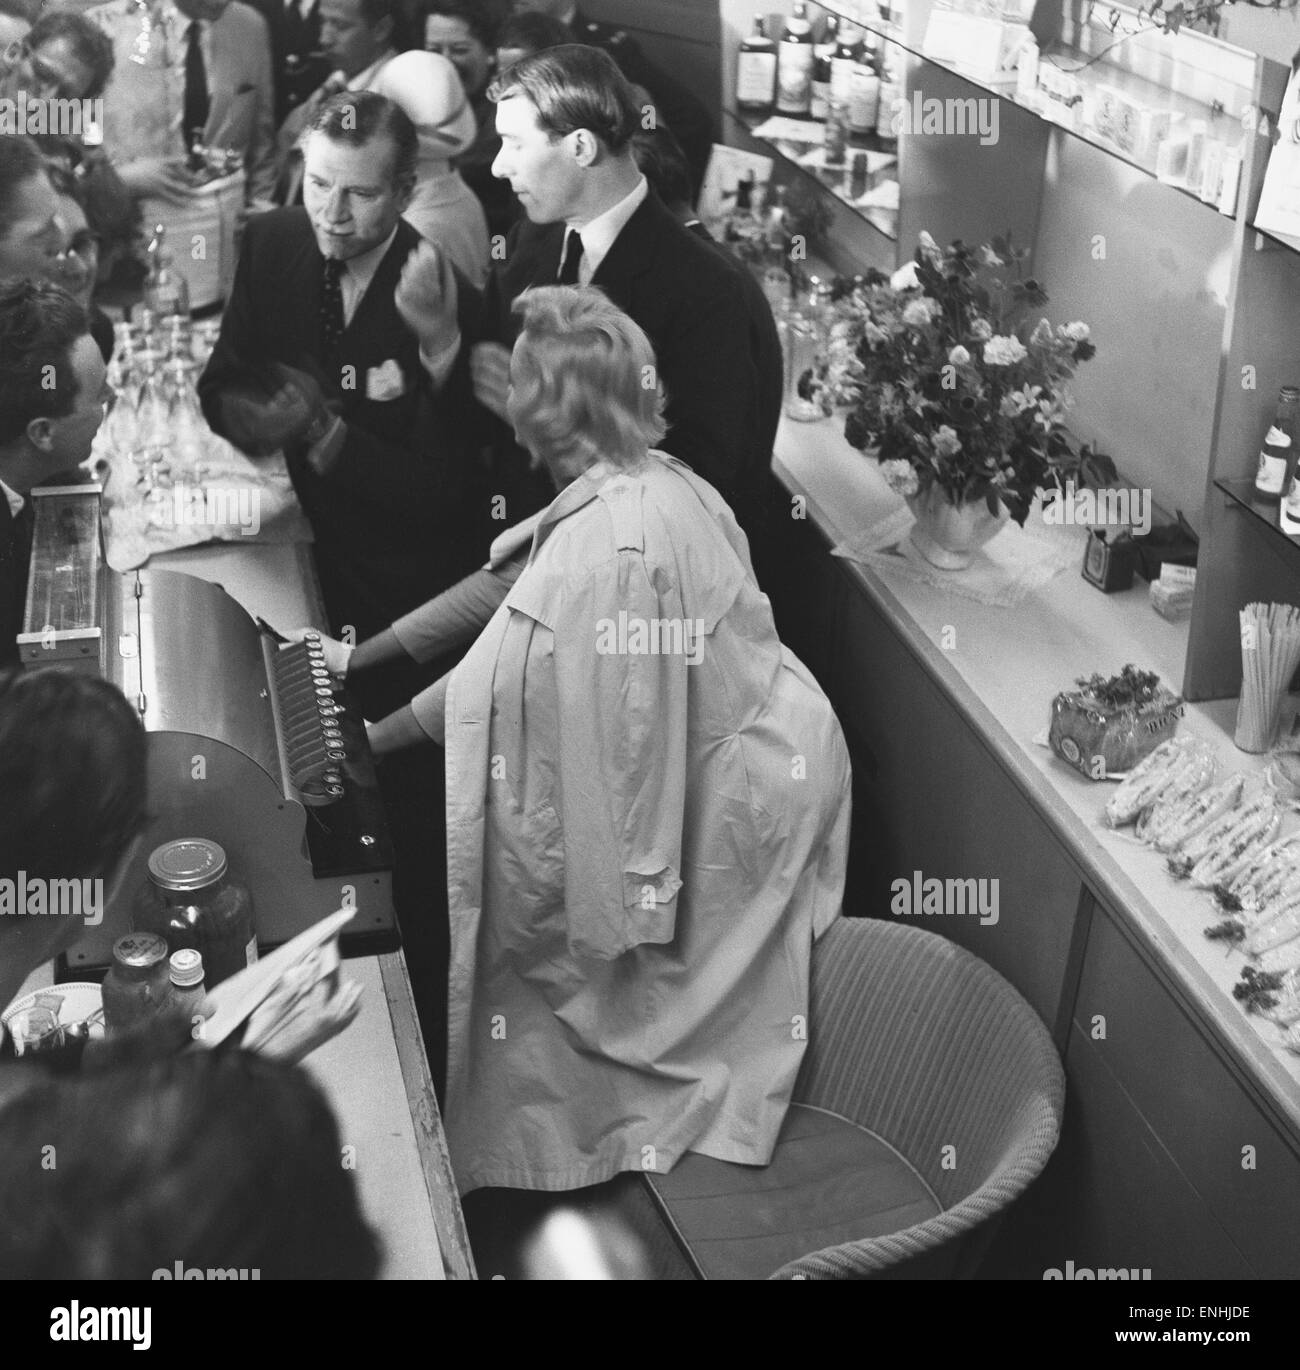 US-amerikanische Schauspielerin Marilyn Monroe und Sir Laurence Olivier Zuflucht von den wartenden Fotografen hinter einem Schalter am Flughafen Heathrow. Monroe hatte gerade mit ihrem Mann, Dramatiker Arthur Miller und Vivien Leigh in London geflogen. Marilyn ist hier zu fil Stockfoto